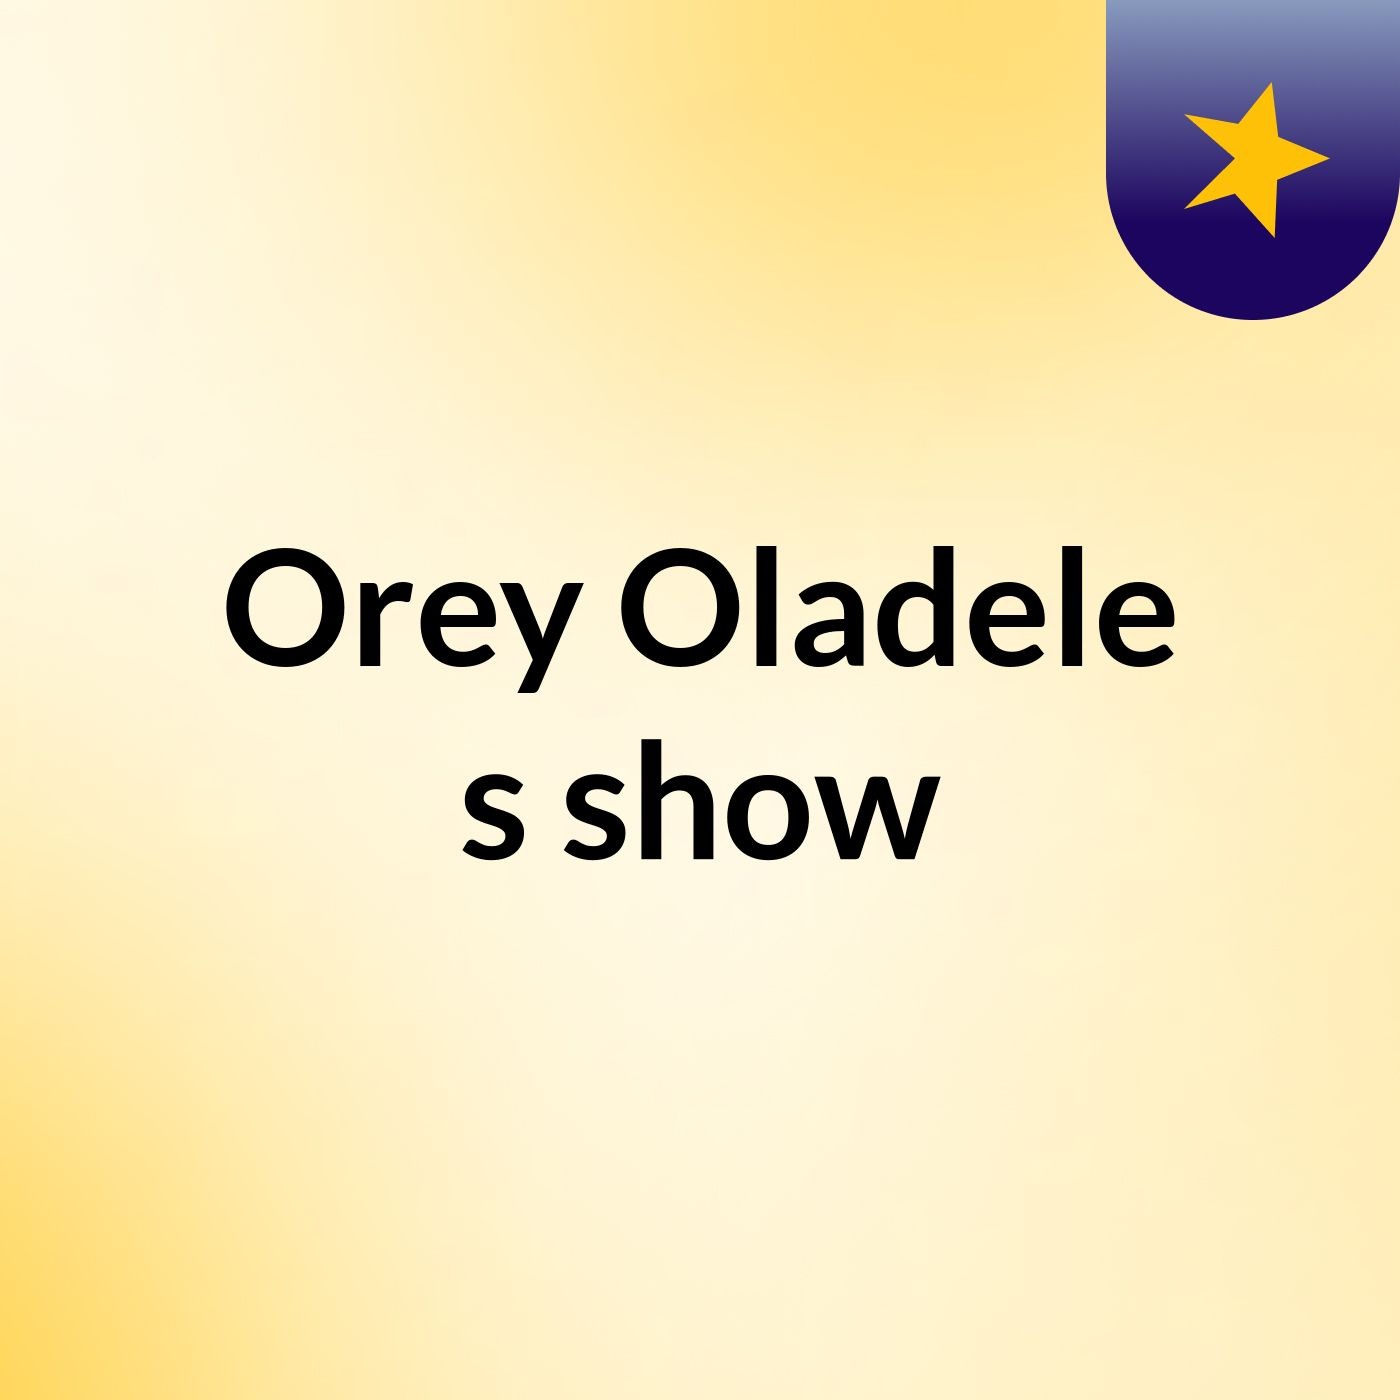 Episode 2 - Orey Oladele's show